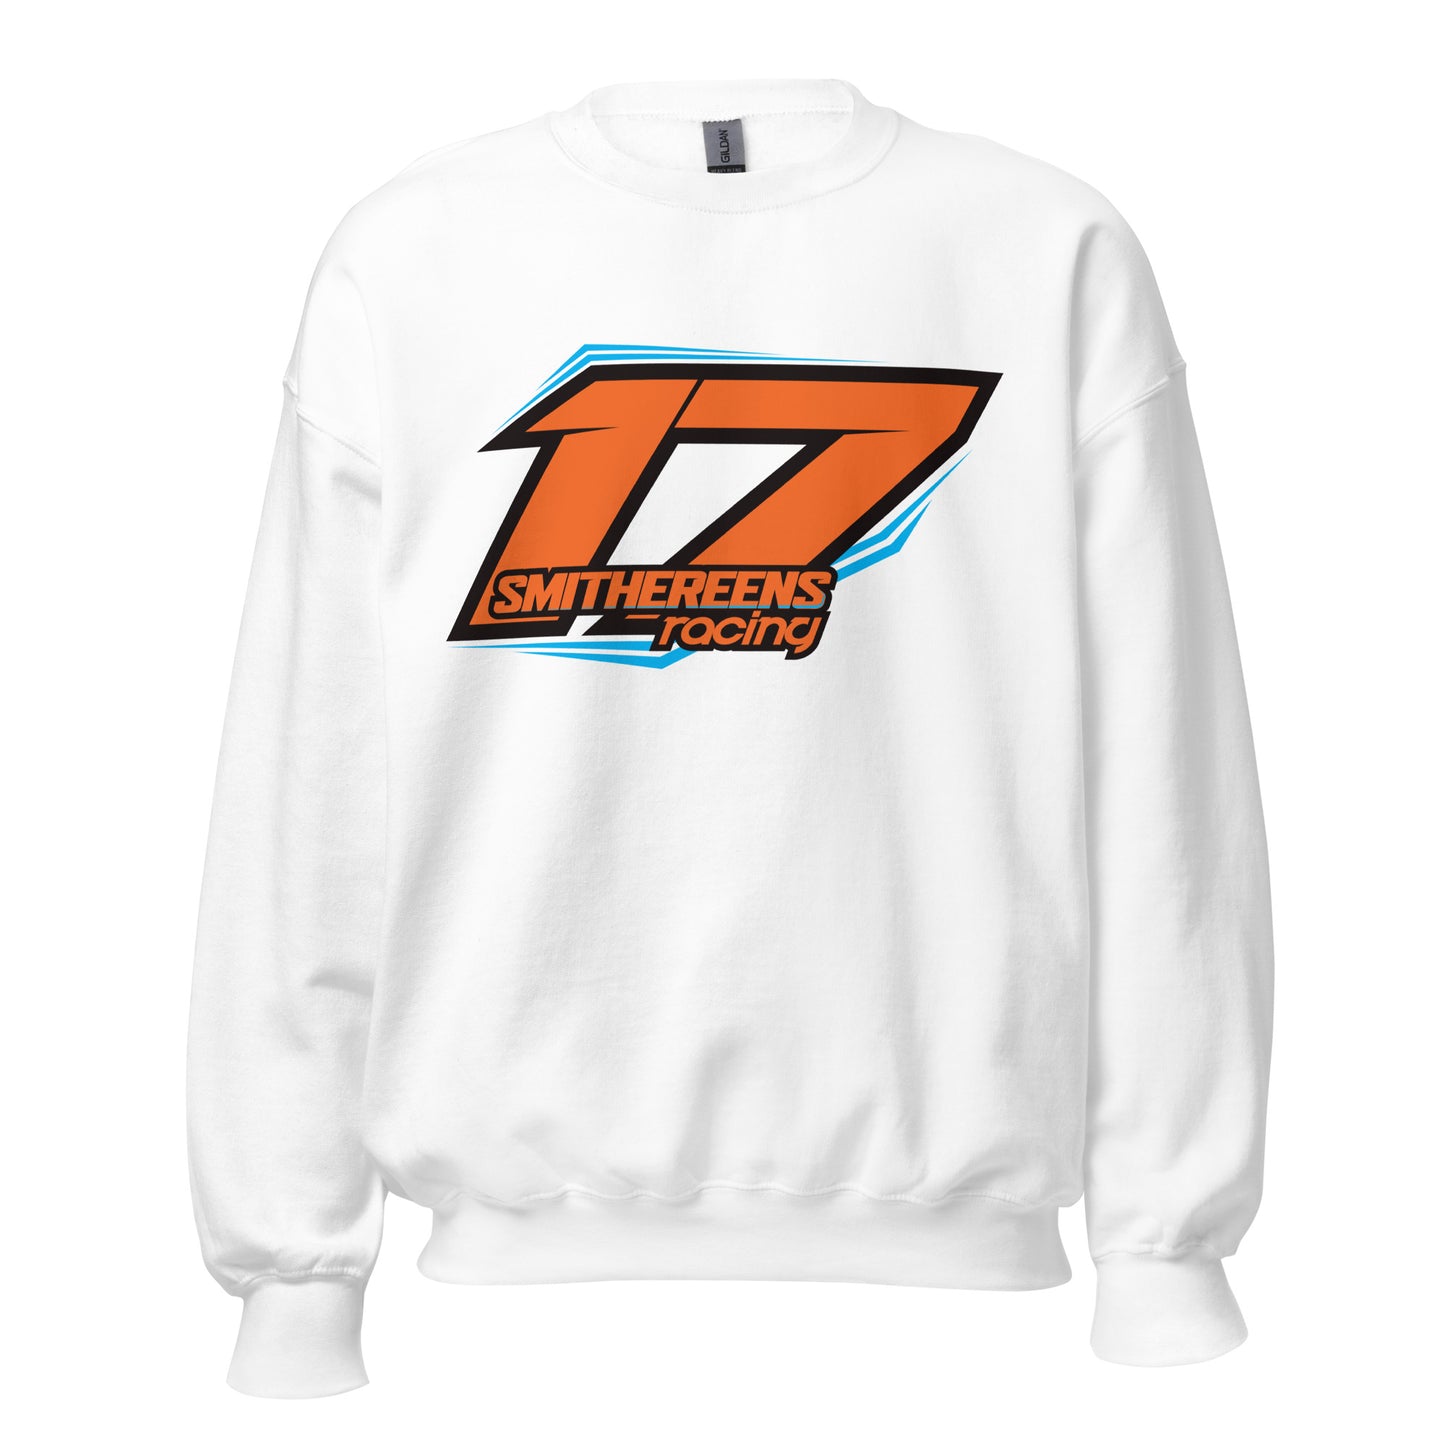 Smithereens Racing Sweatshirt